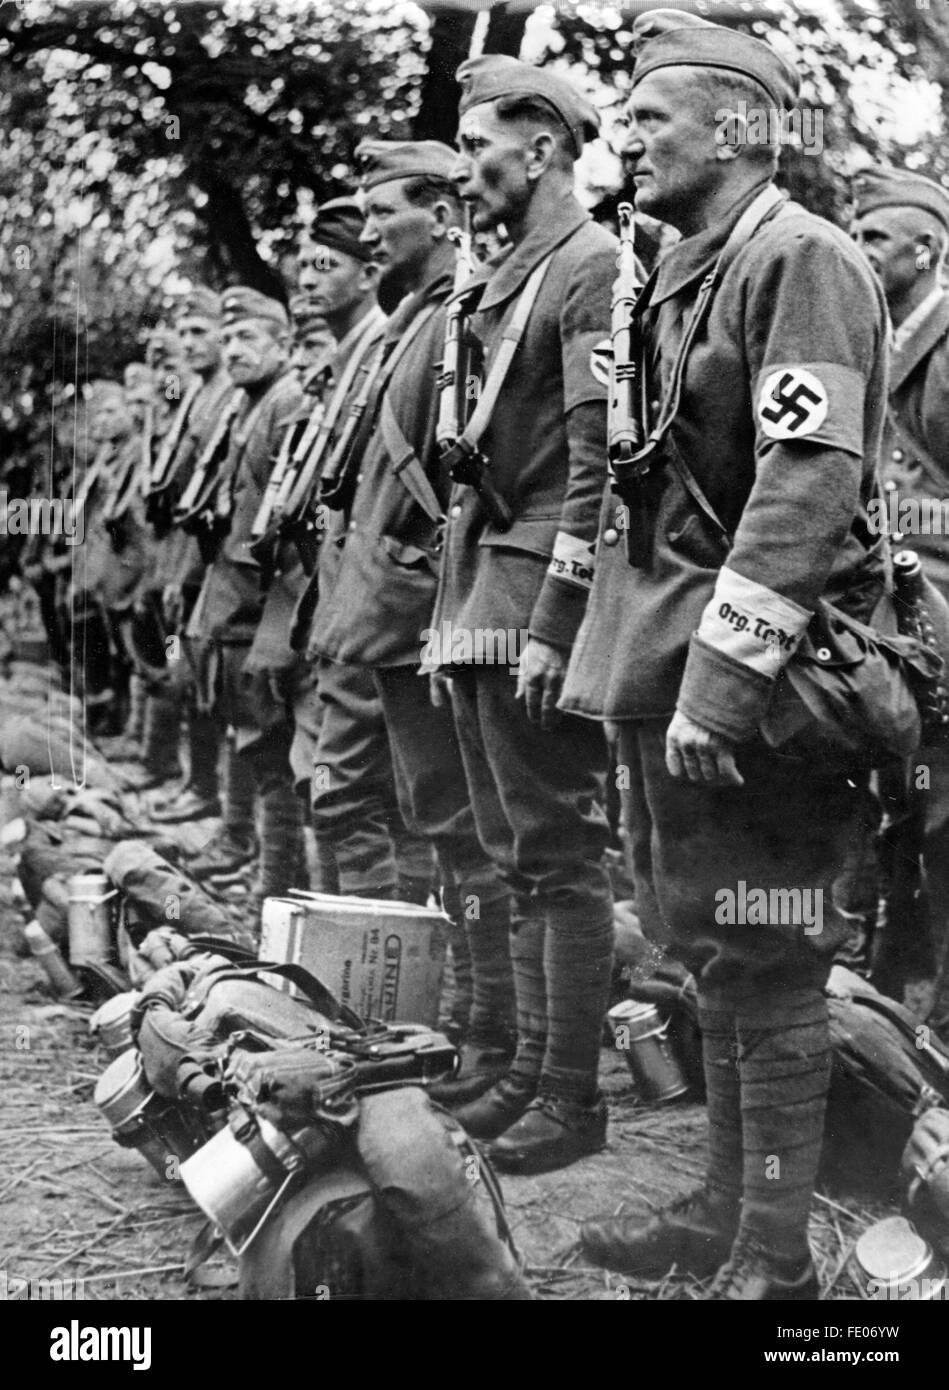 Das Nazi-Propagandafild zeigt Mitglieder der Todt-Organisation, die Uniformen mit Hakenkreuz-Armbändern und Schriftzeichen auf den Ärmeln sowie Rüstung und Rucksack tragen. Ort und Datum unbekannt. Fotoarchiv für Zeitgeschichtee - KEINE ÜBERWEISUNG - Stockfoto